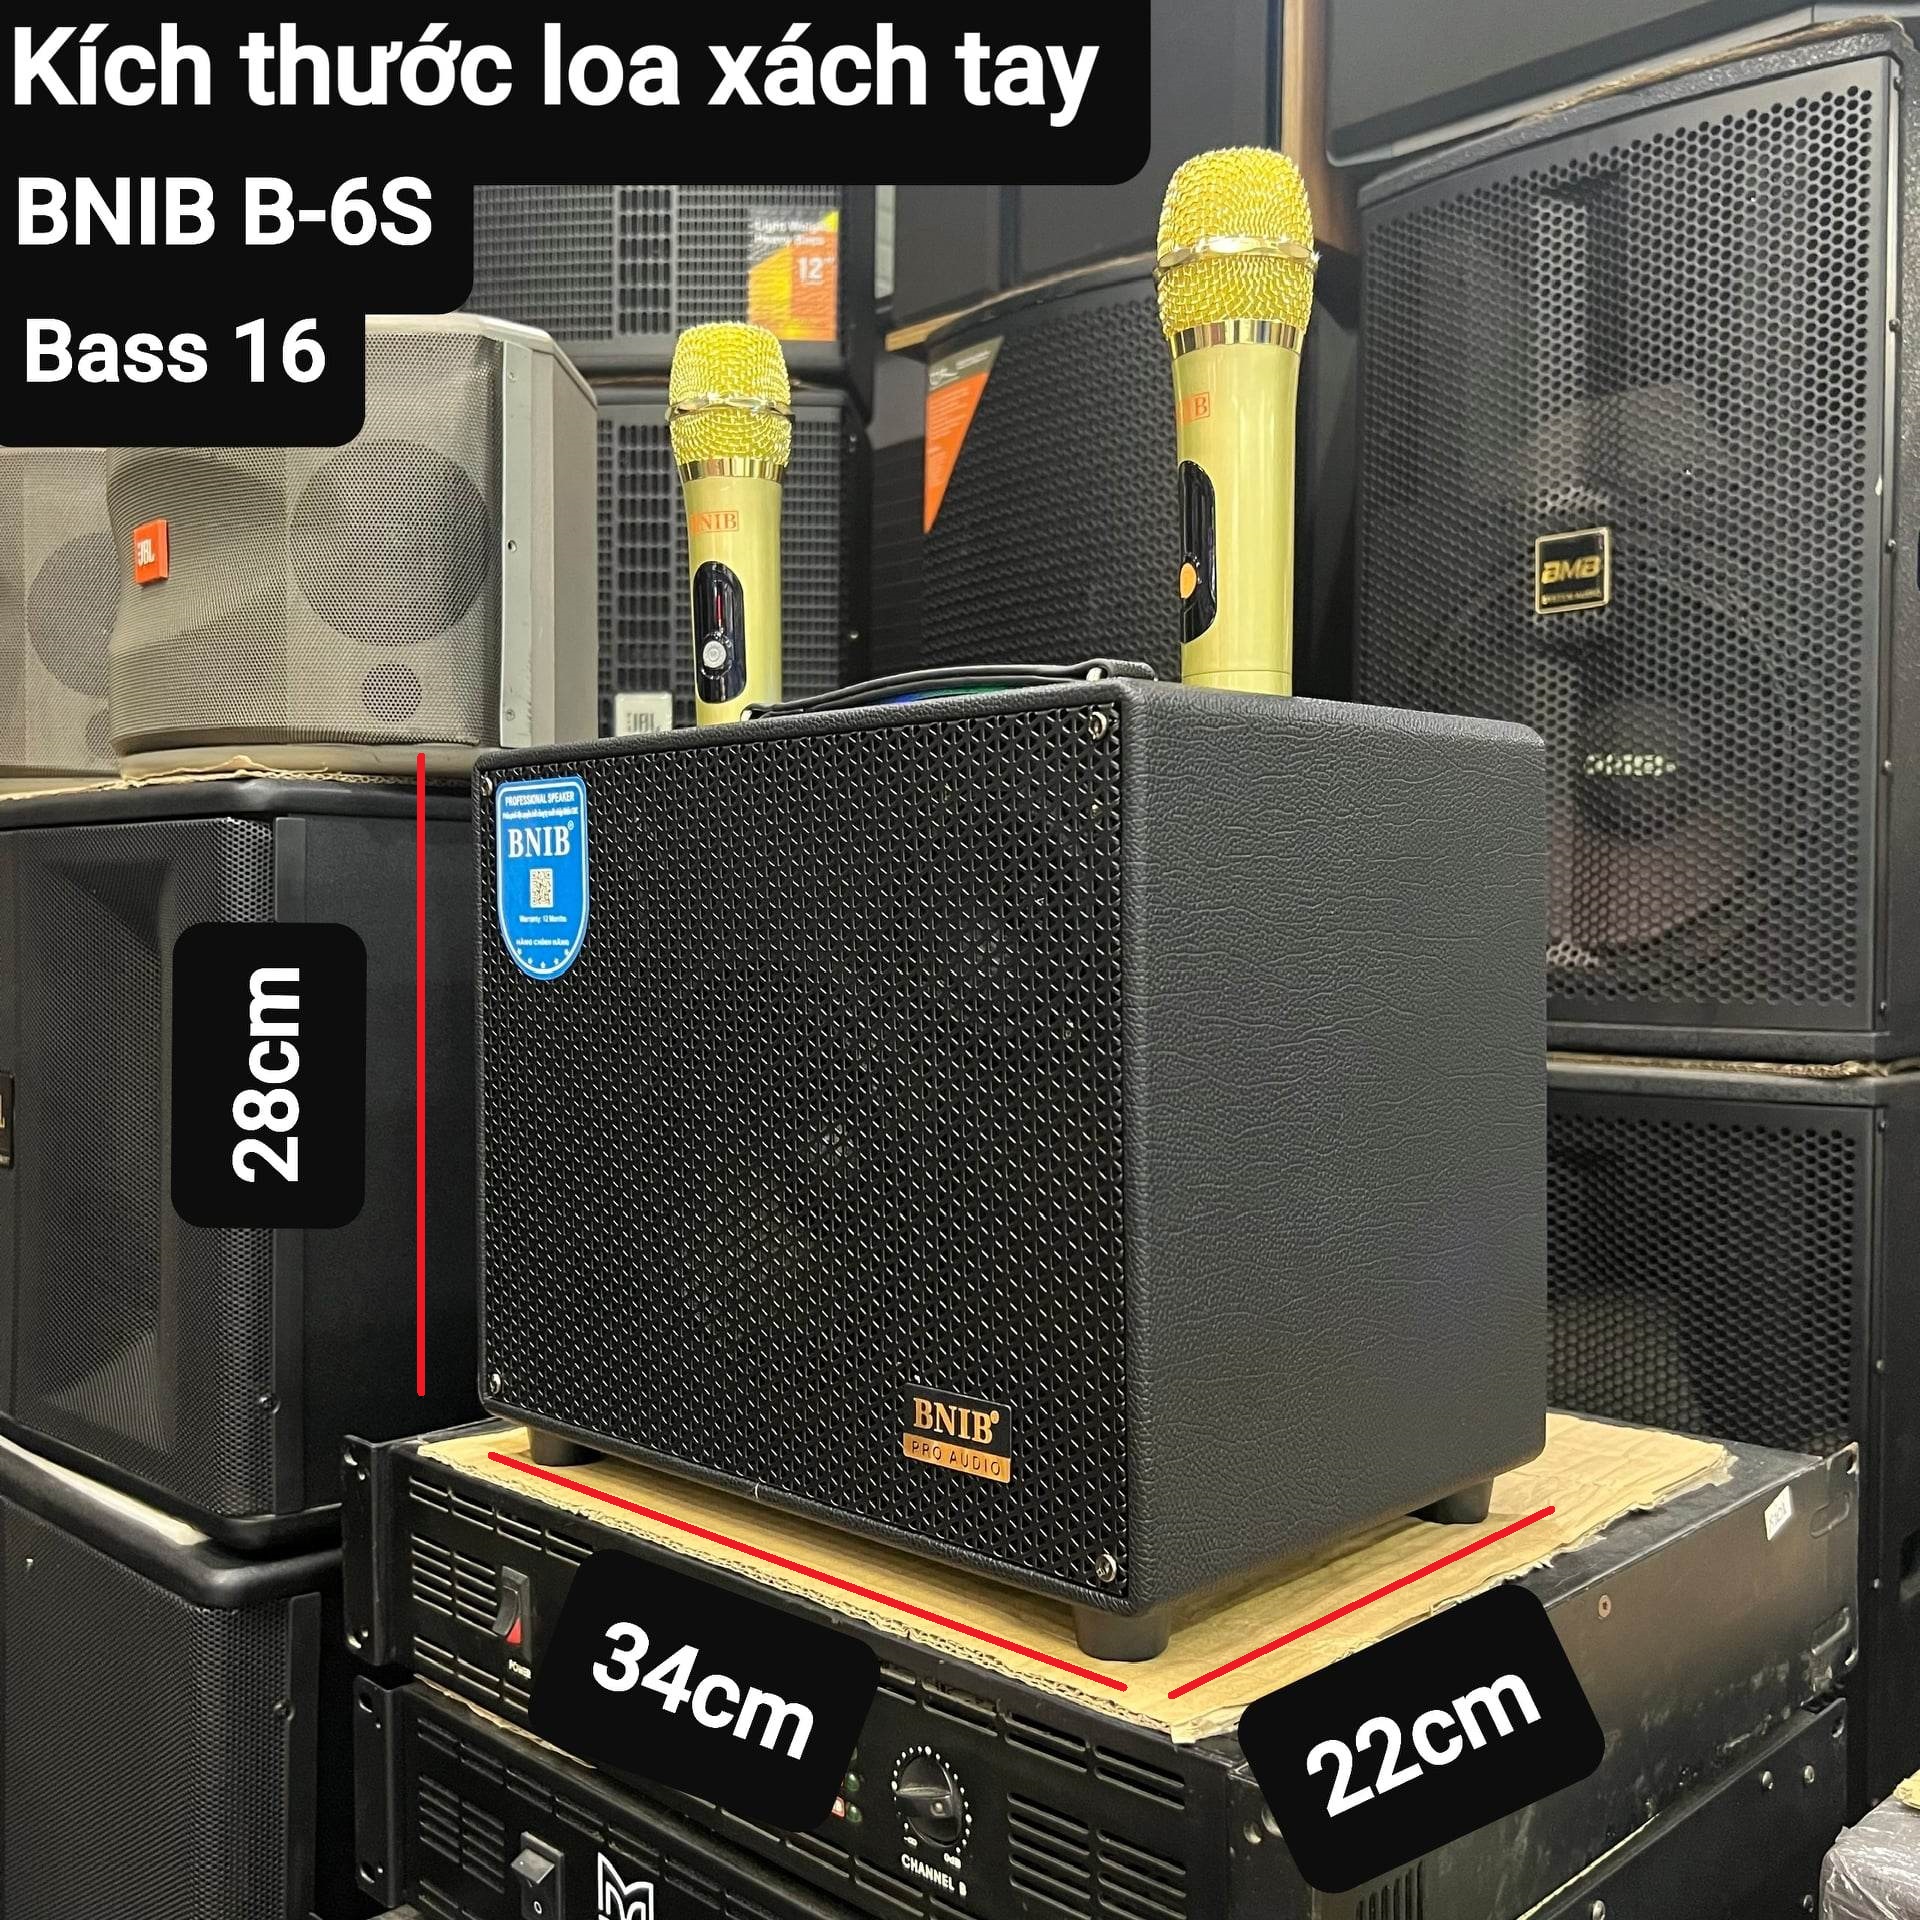 Loa xách tay Karaoke Bluetooth BNIB B-6S: Bass 16, 3 loa, Vỏ gỗ bọc da, Âm thanh chất lượng, Kèm 2 Micro vỏ kim loại